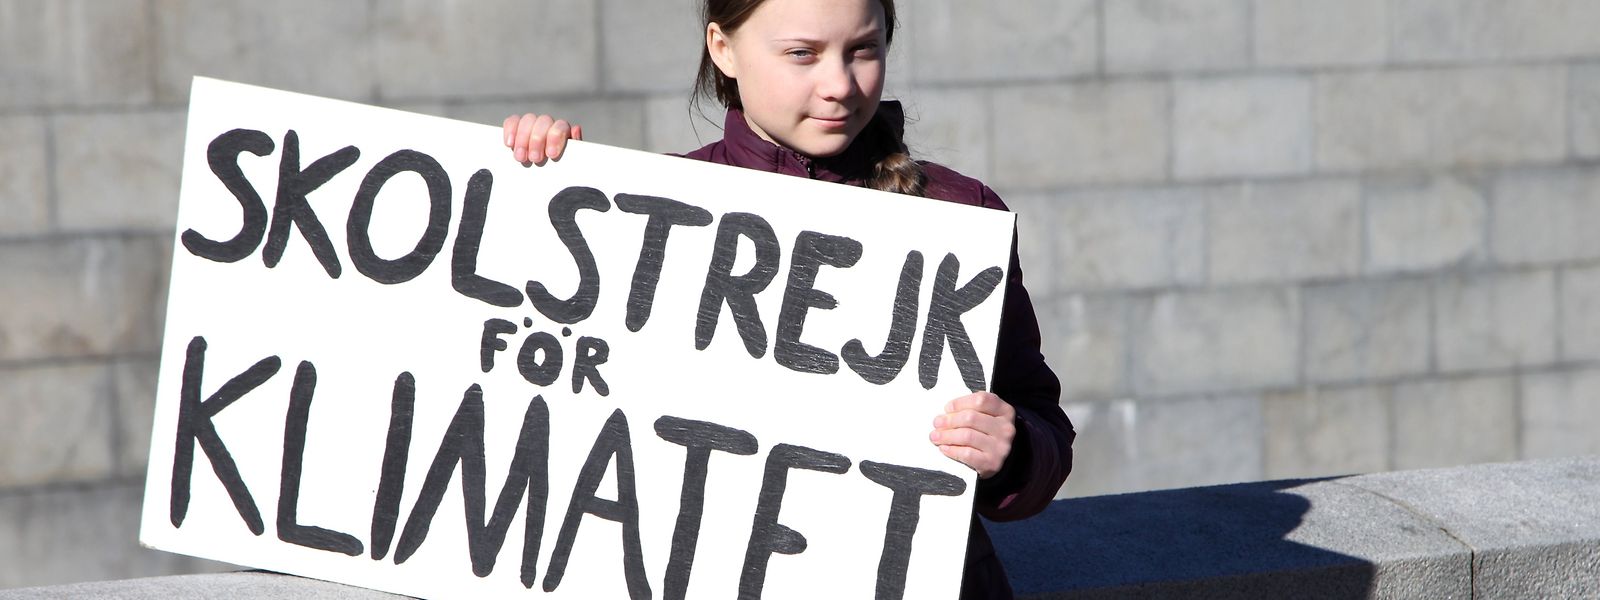 Der Anfang: "Schulstreik für Klima" steht auf der Holzplatte, die Greta Thunberg in die Kamera hält. Eine weltweite Protestbewegung folgte.